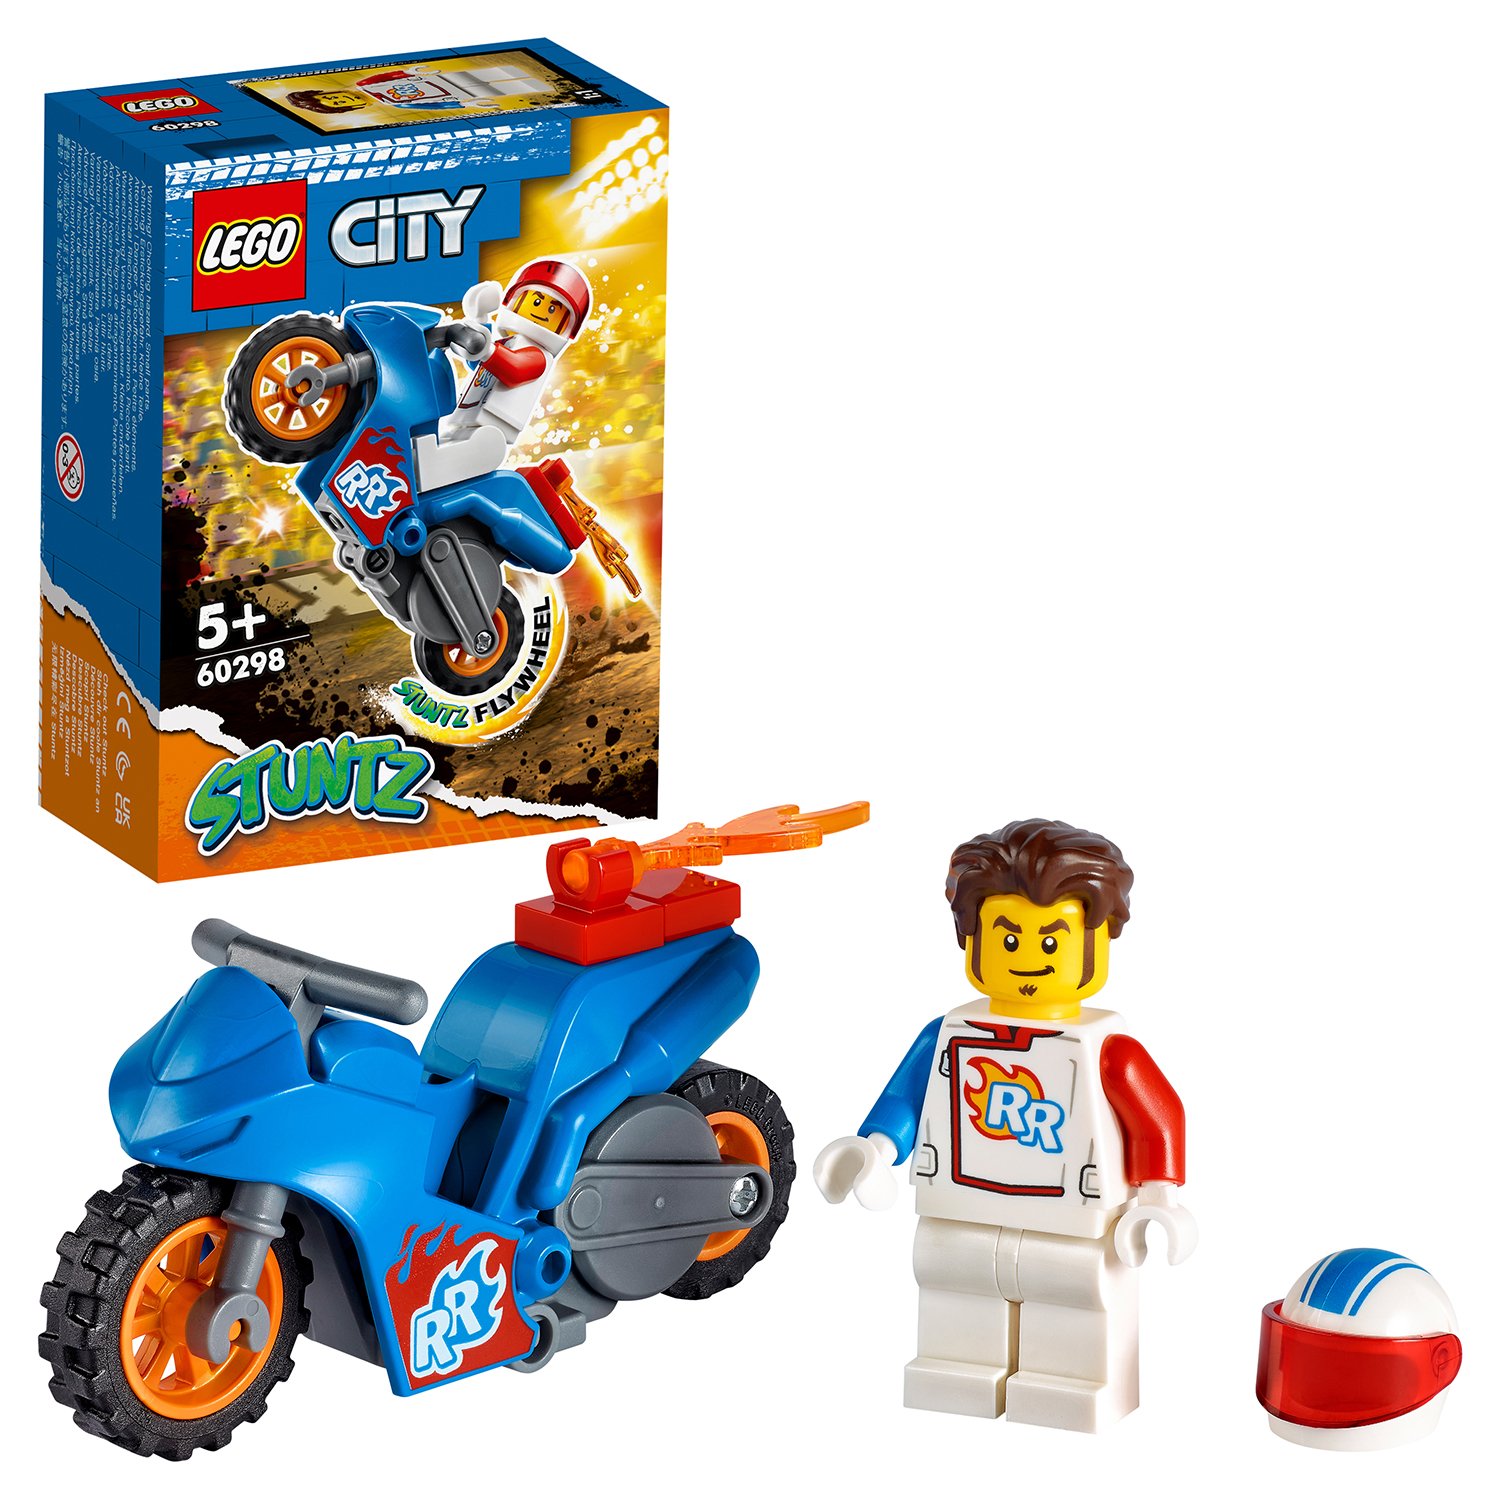 Конструктор LEGO City Stuntz Реактивный трюковый мотоцикл 60298